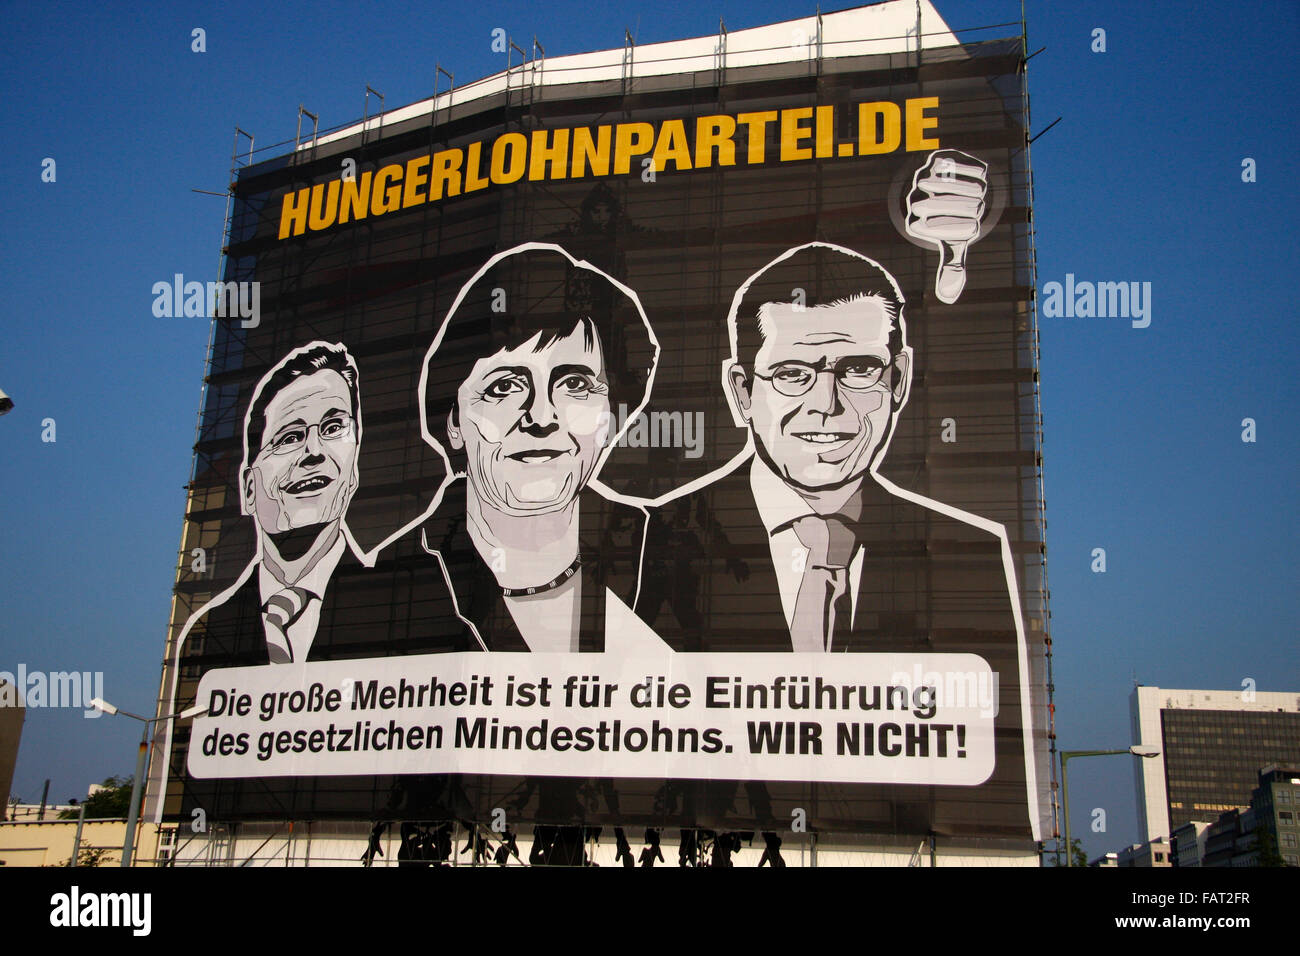 Hungerlohnpartei.de: Guido Westerwelle, Angela Merkel, Karl-Theodor zu Guttenberg - Wahlplakate zur Bundestagswahl 2009, 21. Se Foto Stock